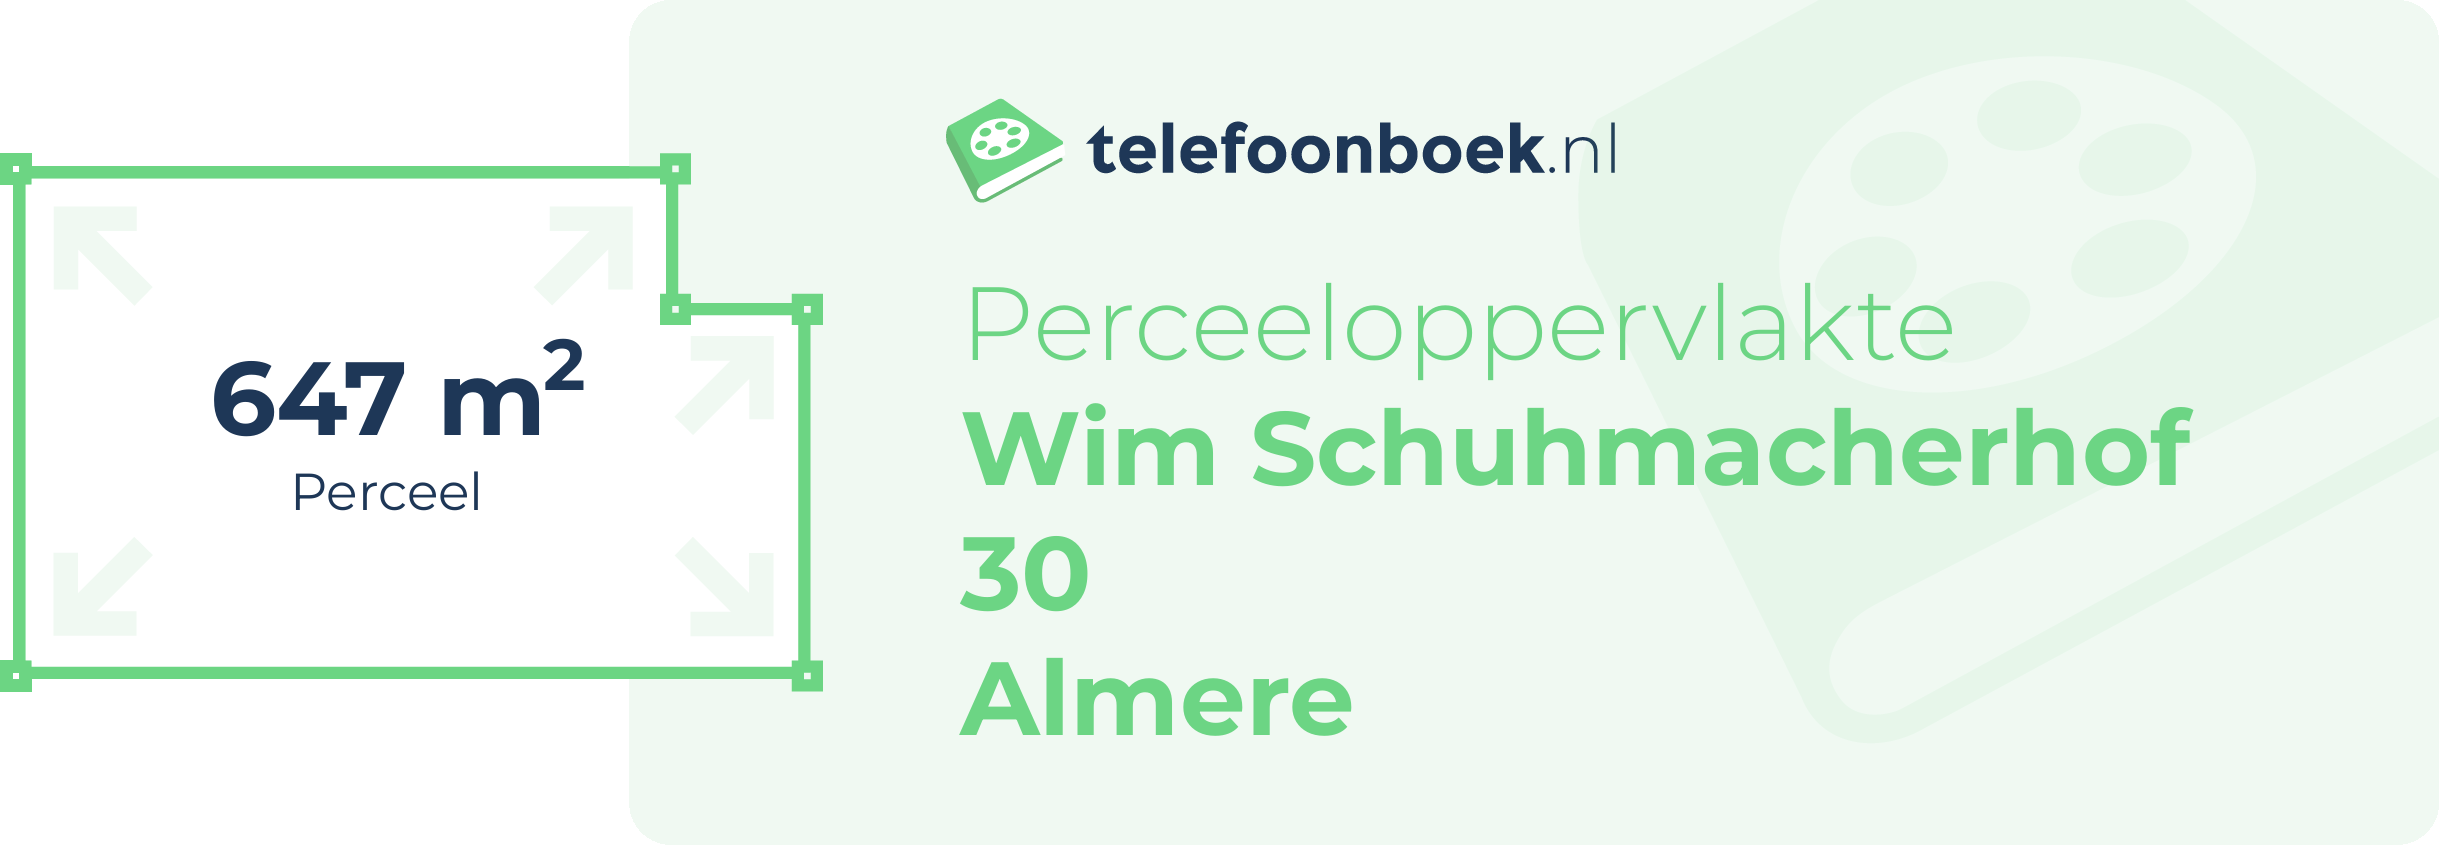 Perceeloppervlakte Wim Schuhmacherhof 30 Almere